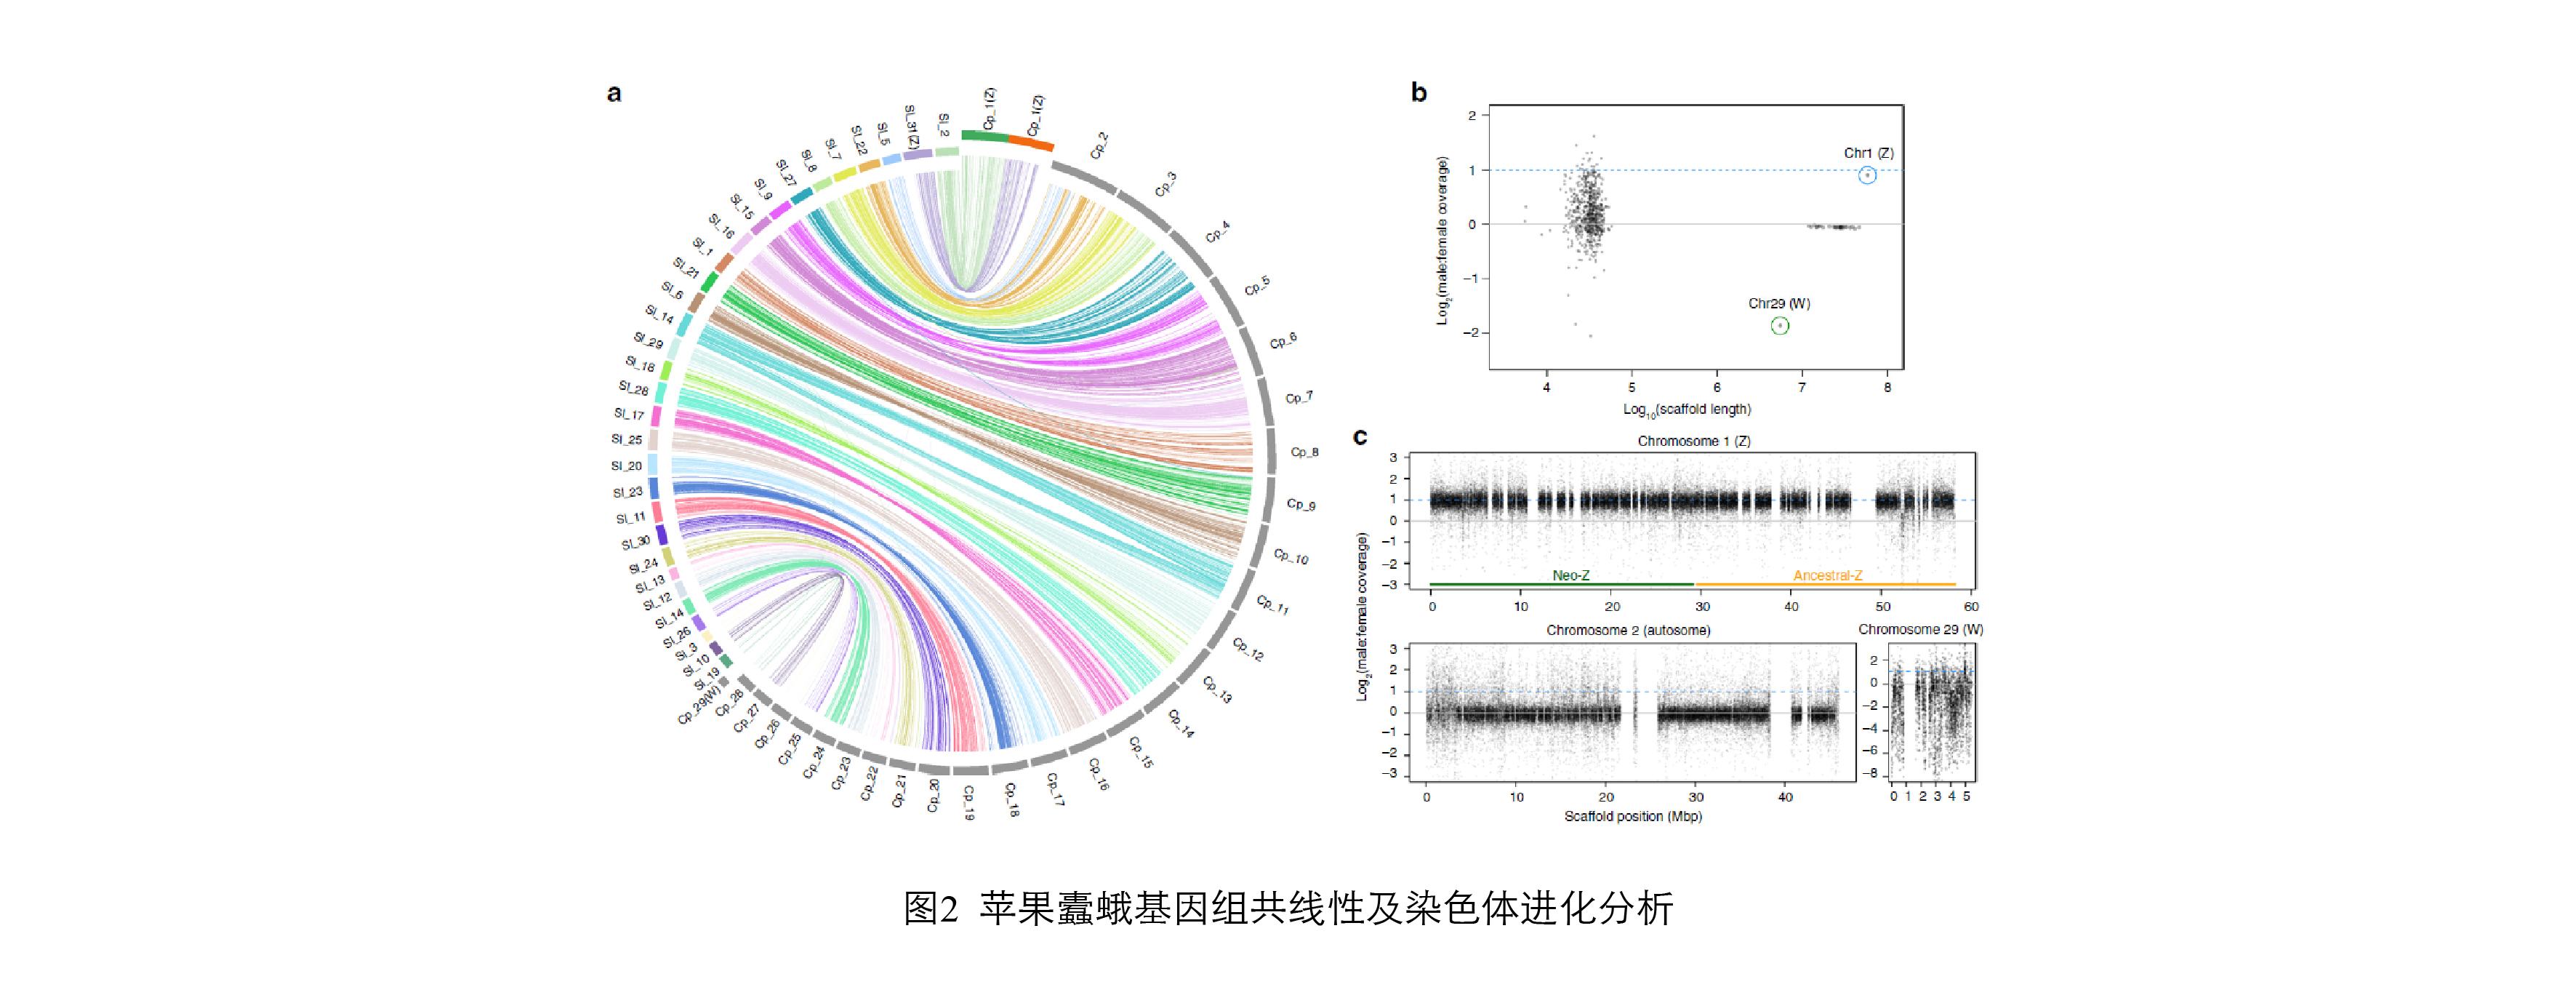 图2. 苹果蠹蛾基因组共线性及染色体进化分析